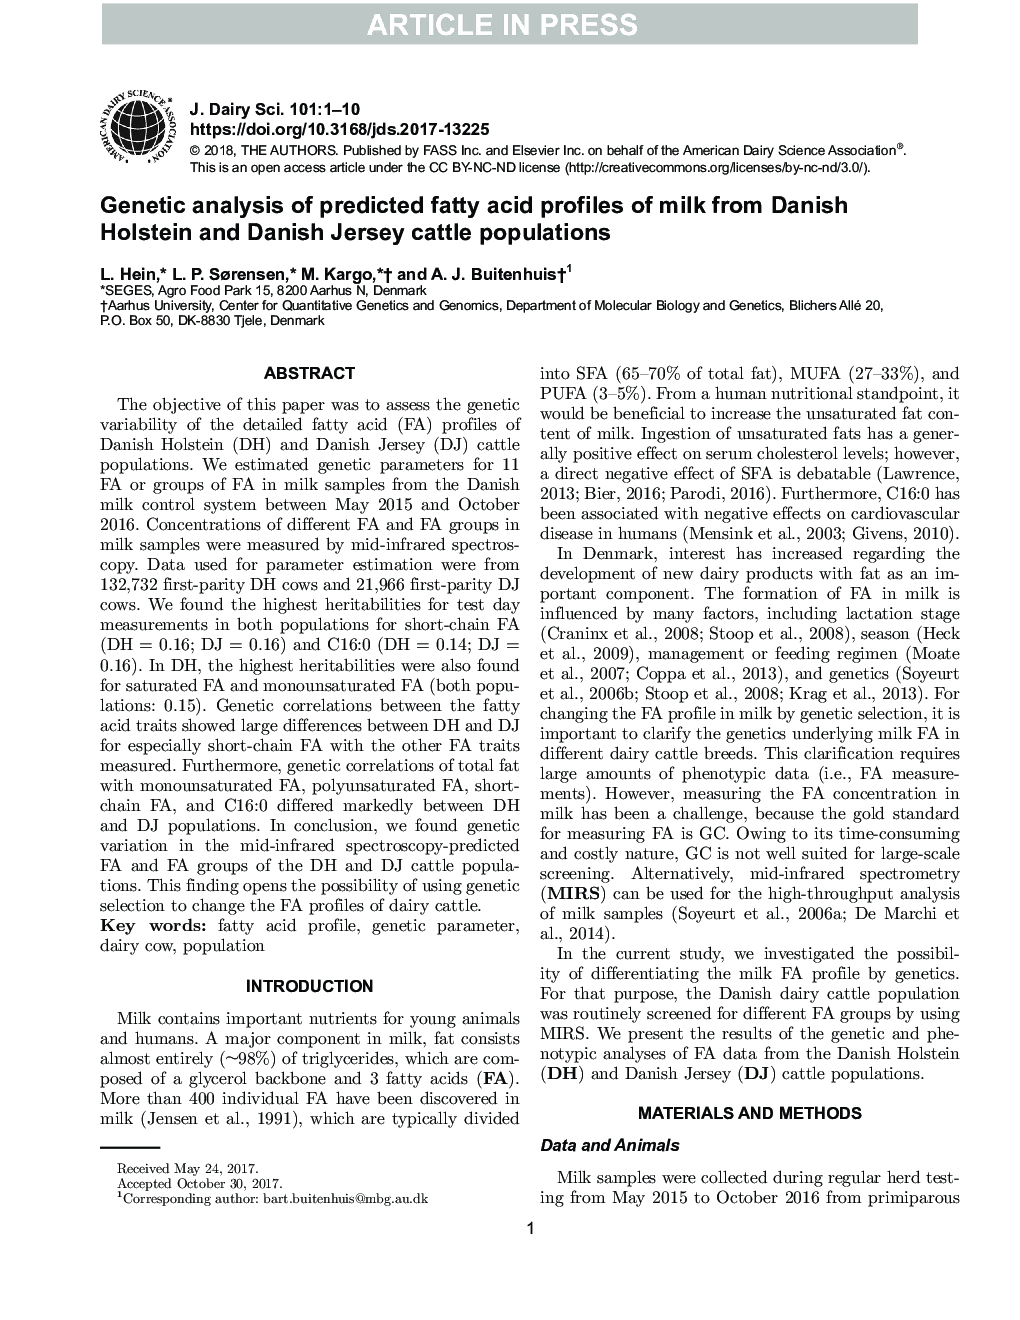 تجزیه و تحلیل ژنتیکی پروتئین های اسید چرب پیش بینی شده از شیر گاو دانمارکی هلشتاین و جورجی دانمارکی 